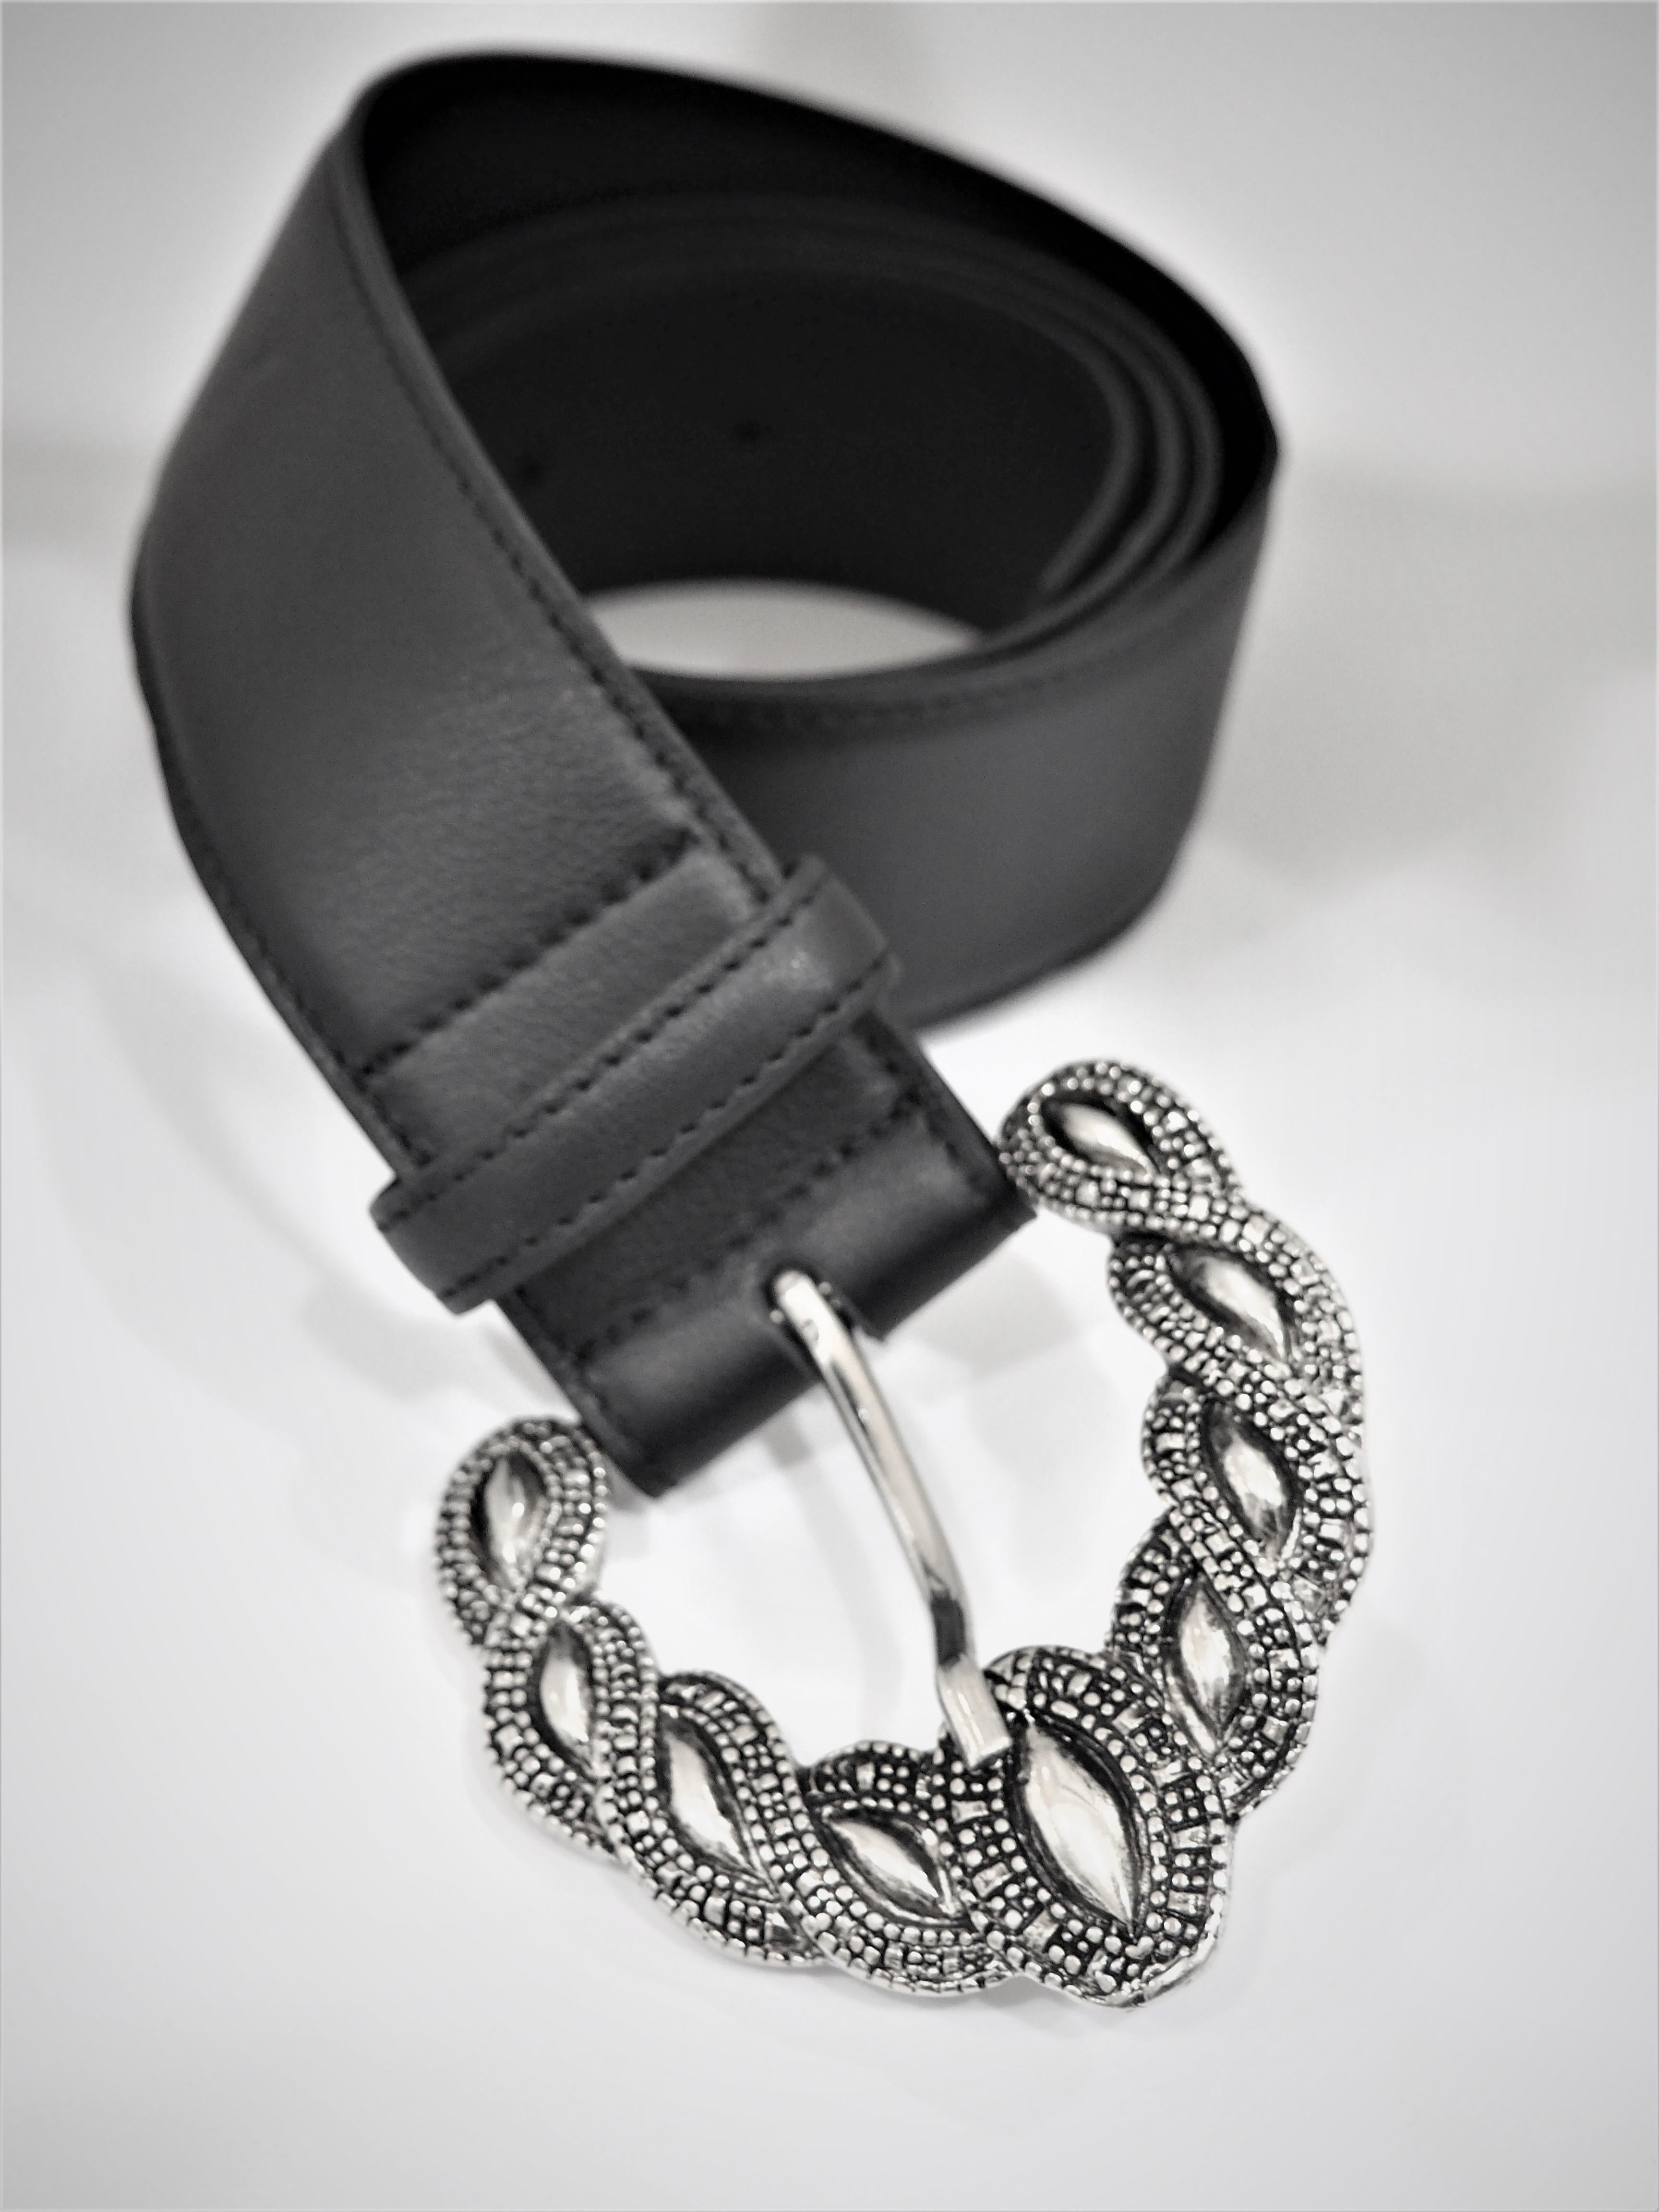 Black leather silver hardware belt NWOT 1